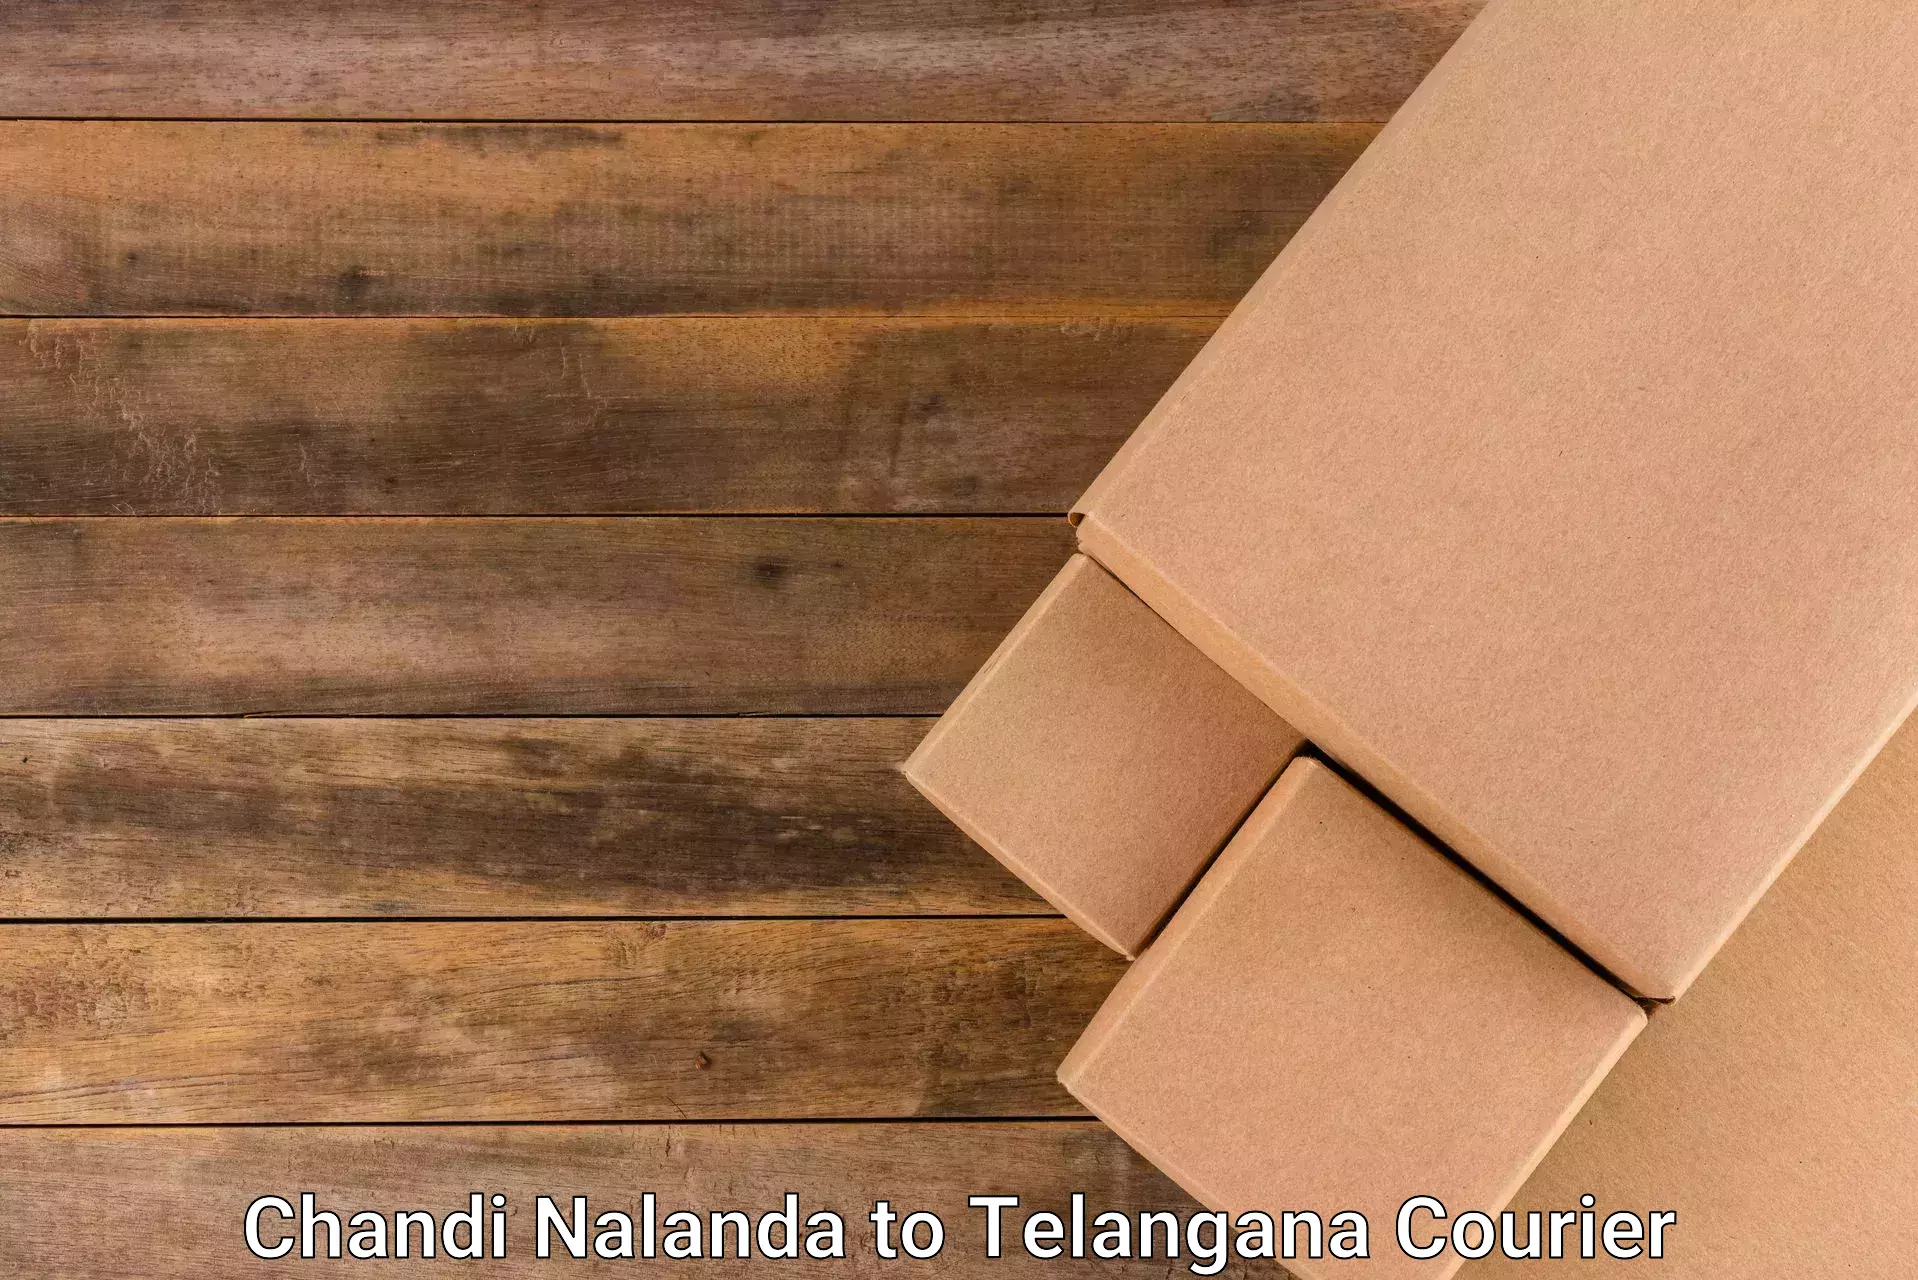 Express logistics Chandi Nalanda to Yellandu